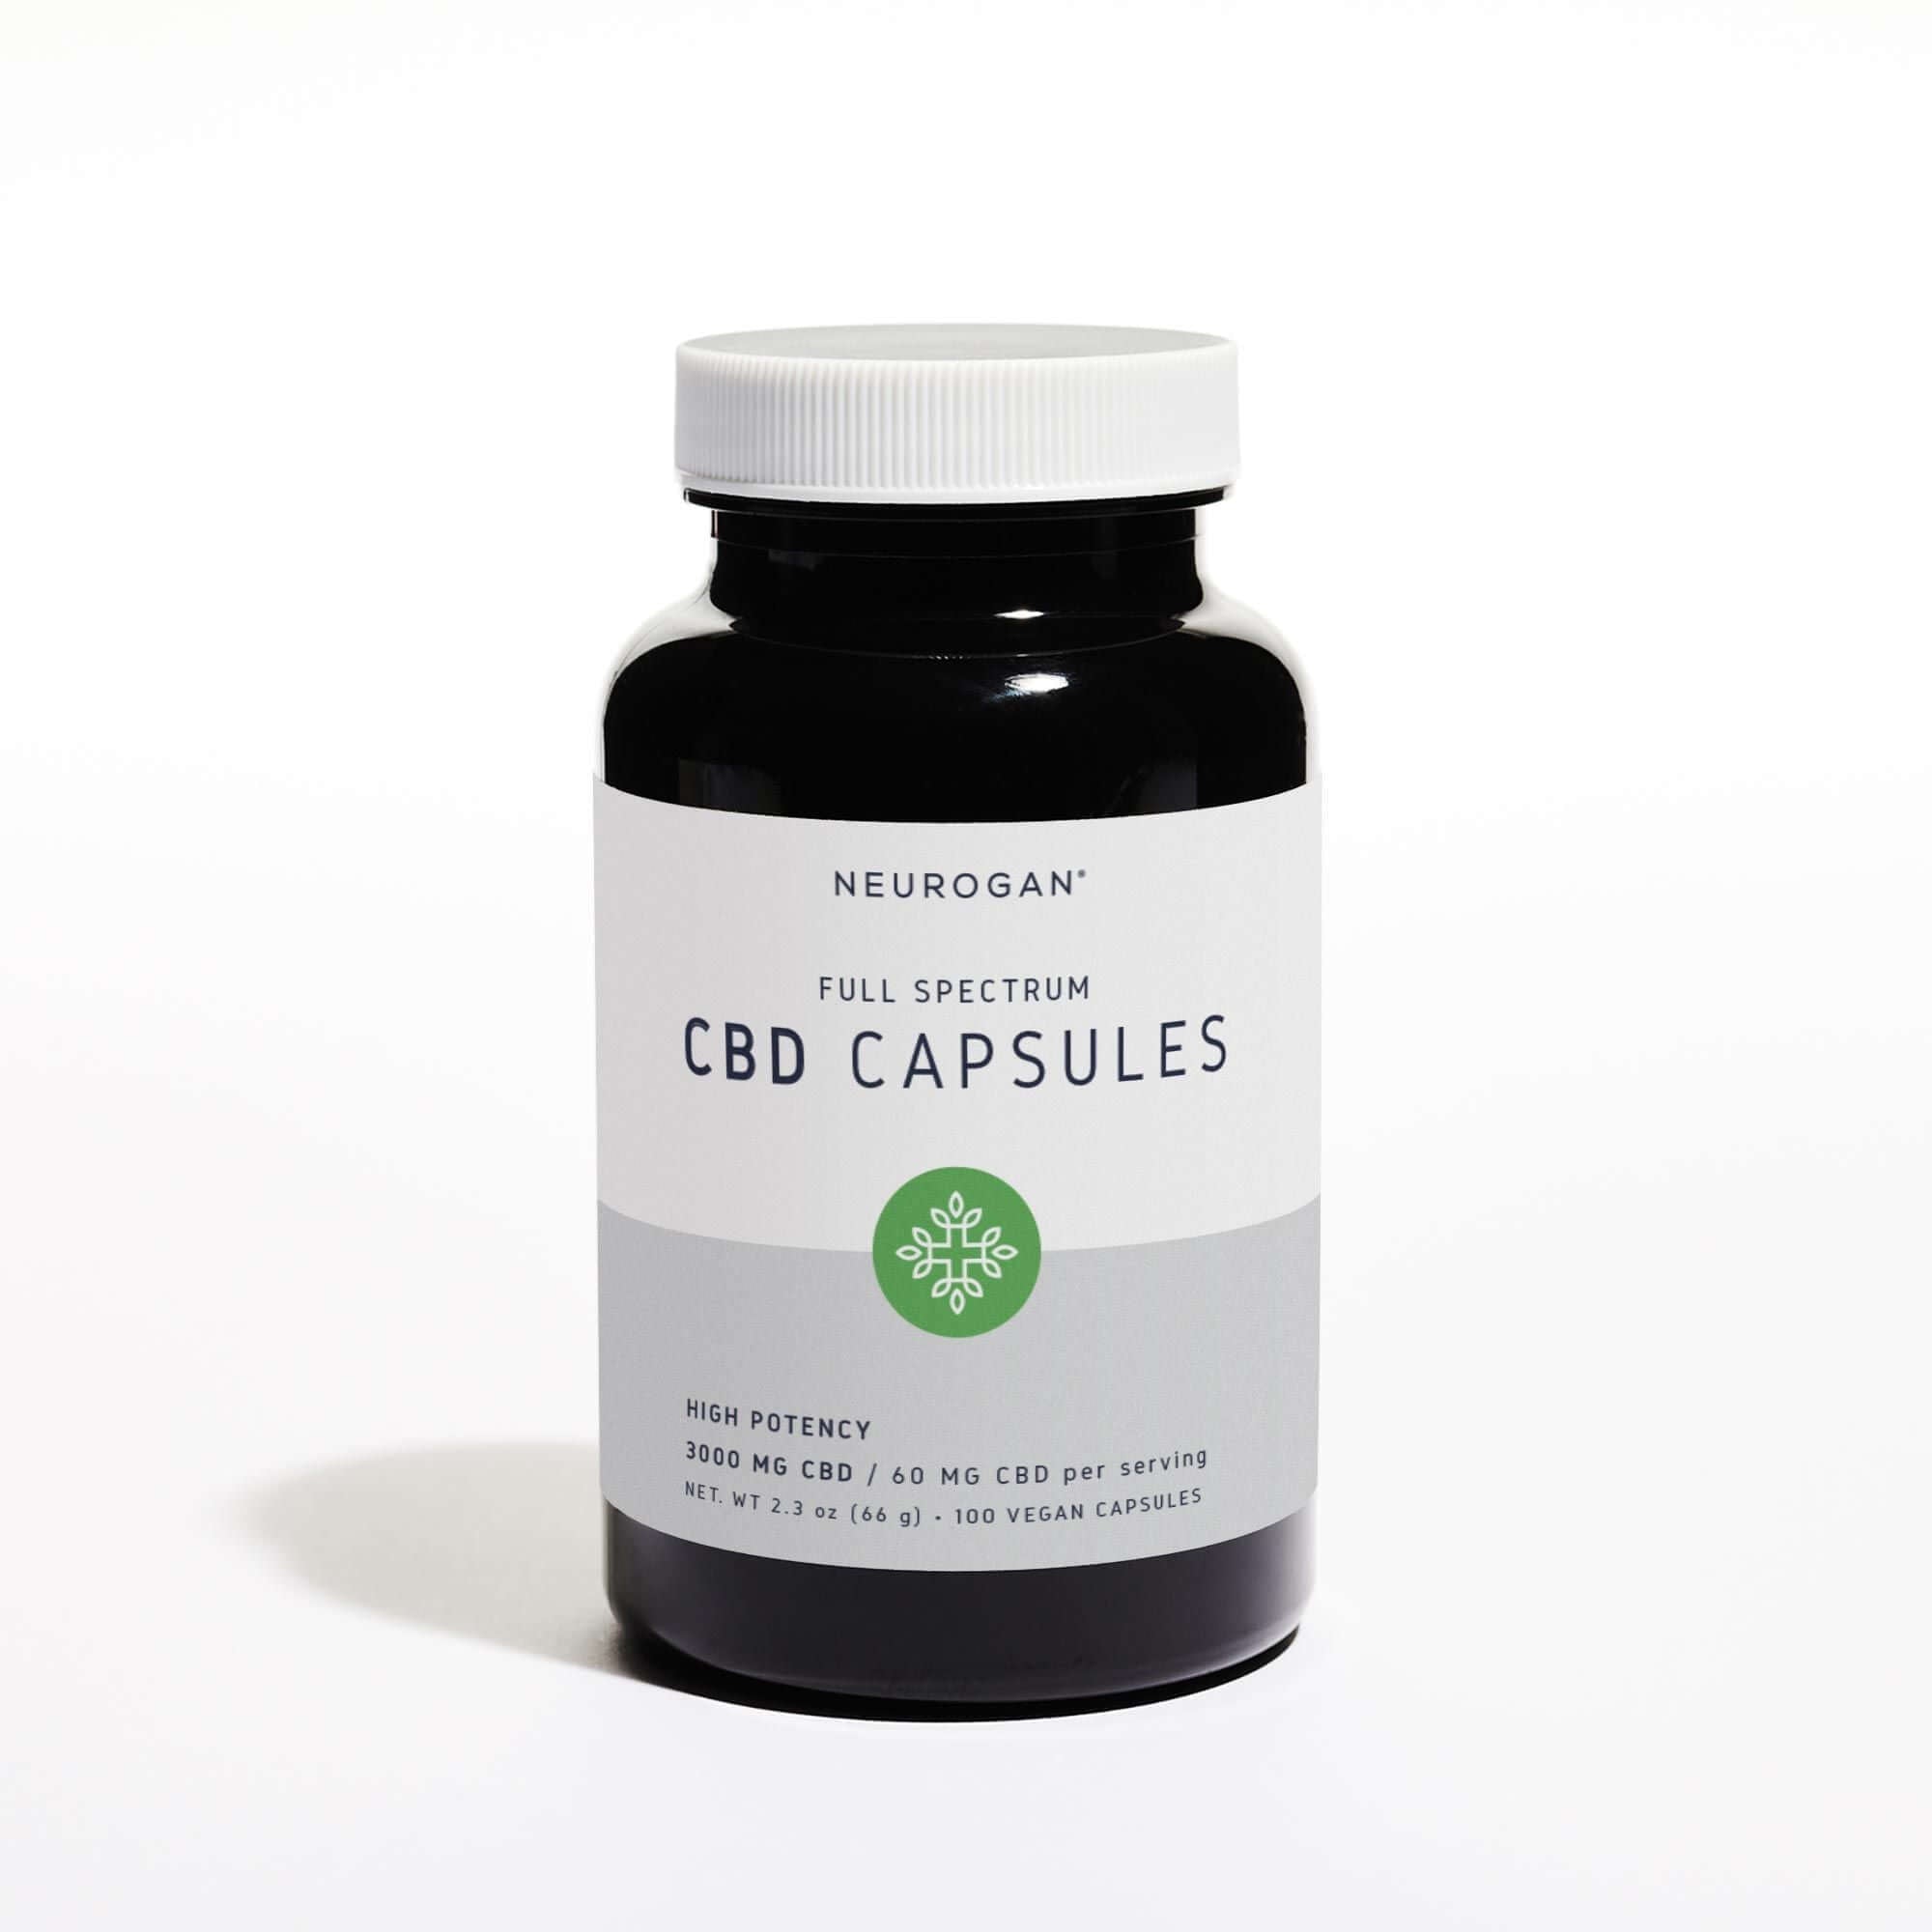 A bottle of full spectrum CBD capsules 3000mg